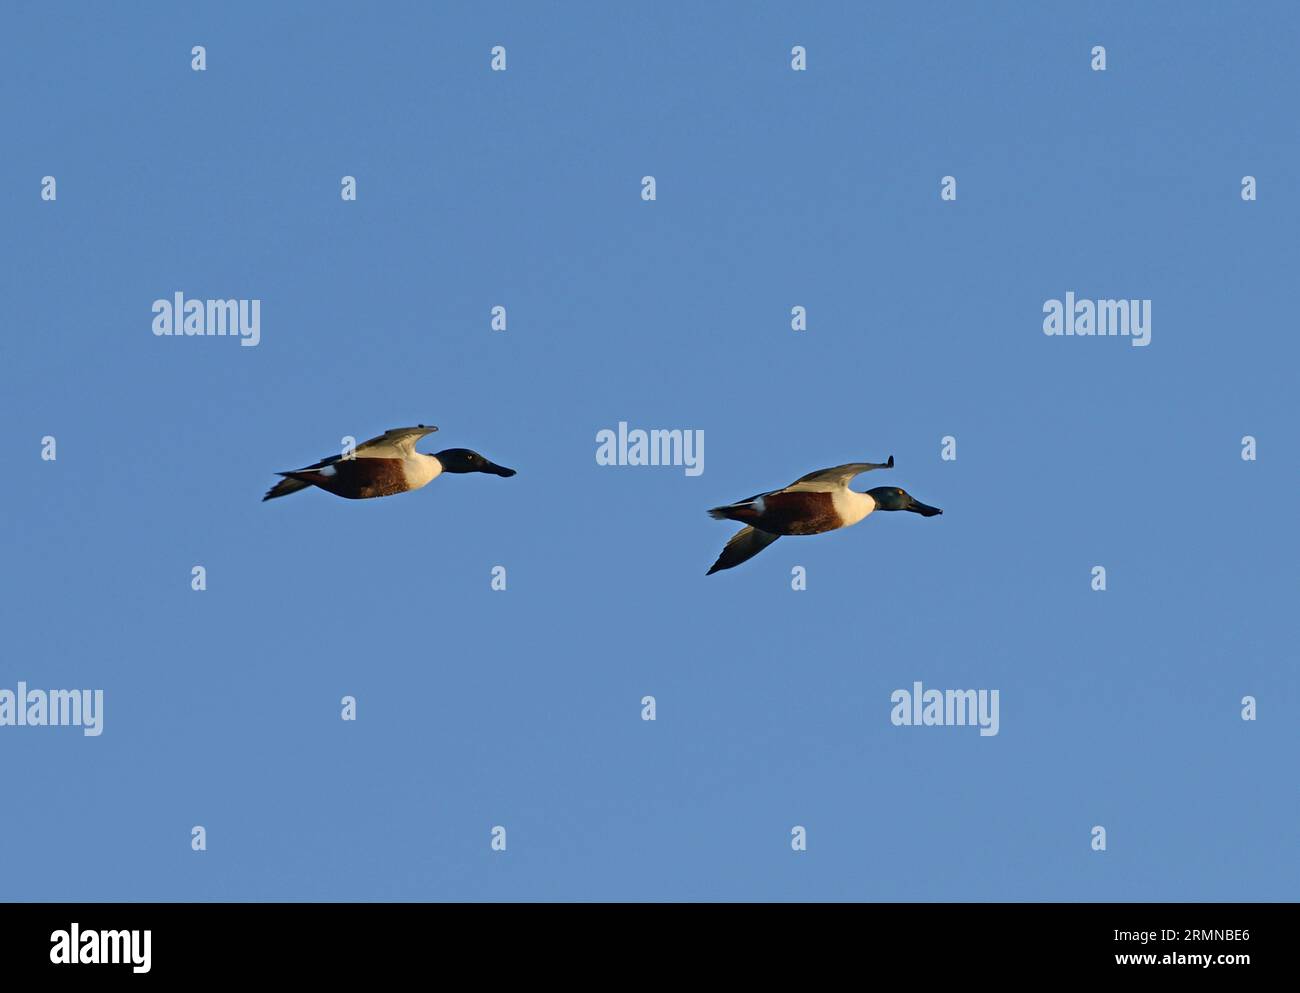 Farbbild eines Paares von Schaufelradenten vor einem blauen Himmel, der von links nach rechts mit einer hinter der anderen fliegt Stockfoto